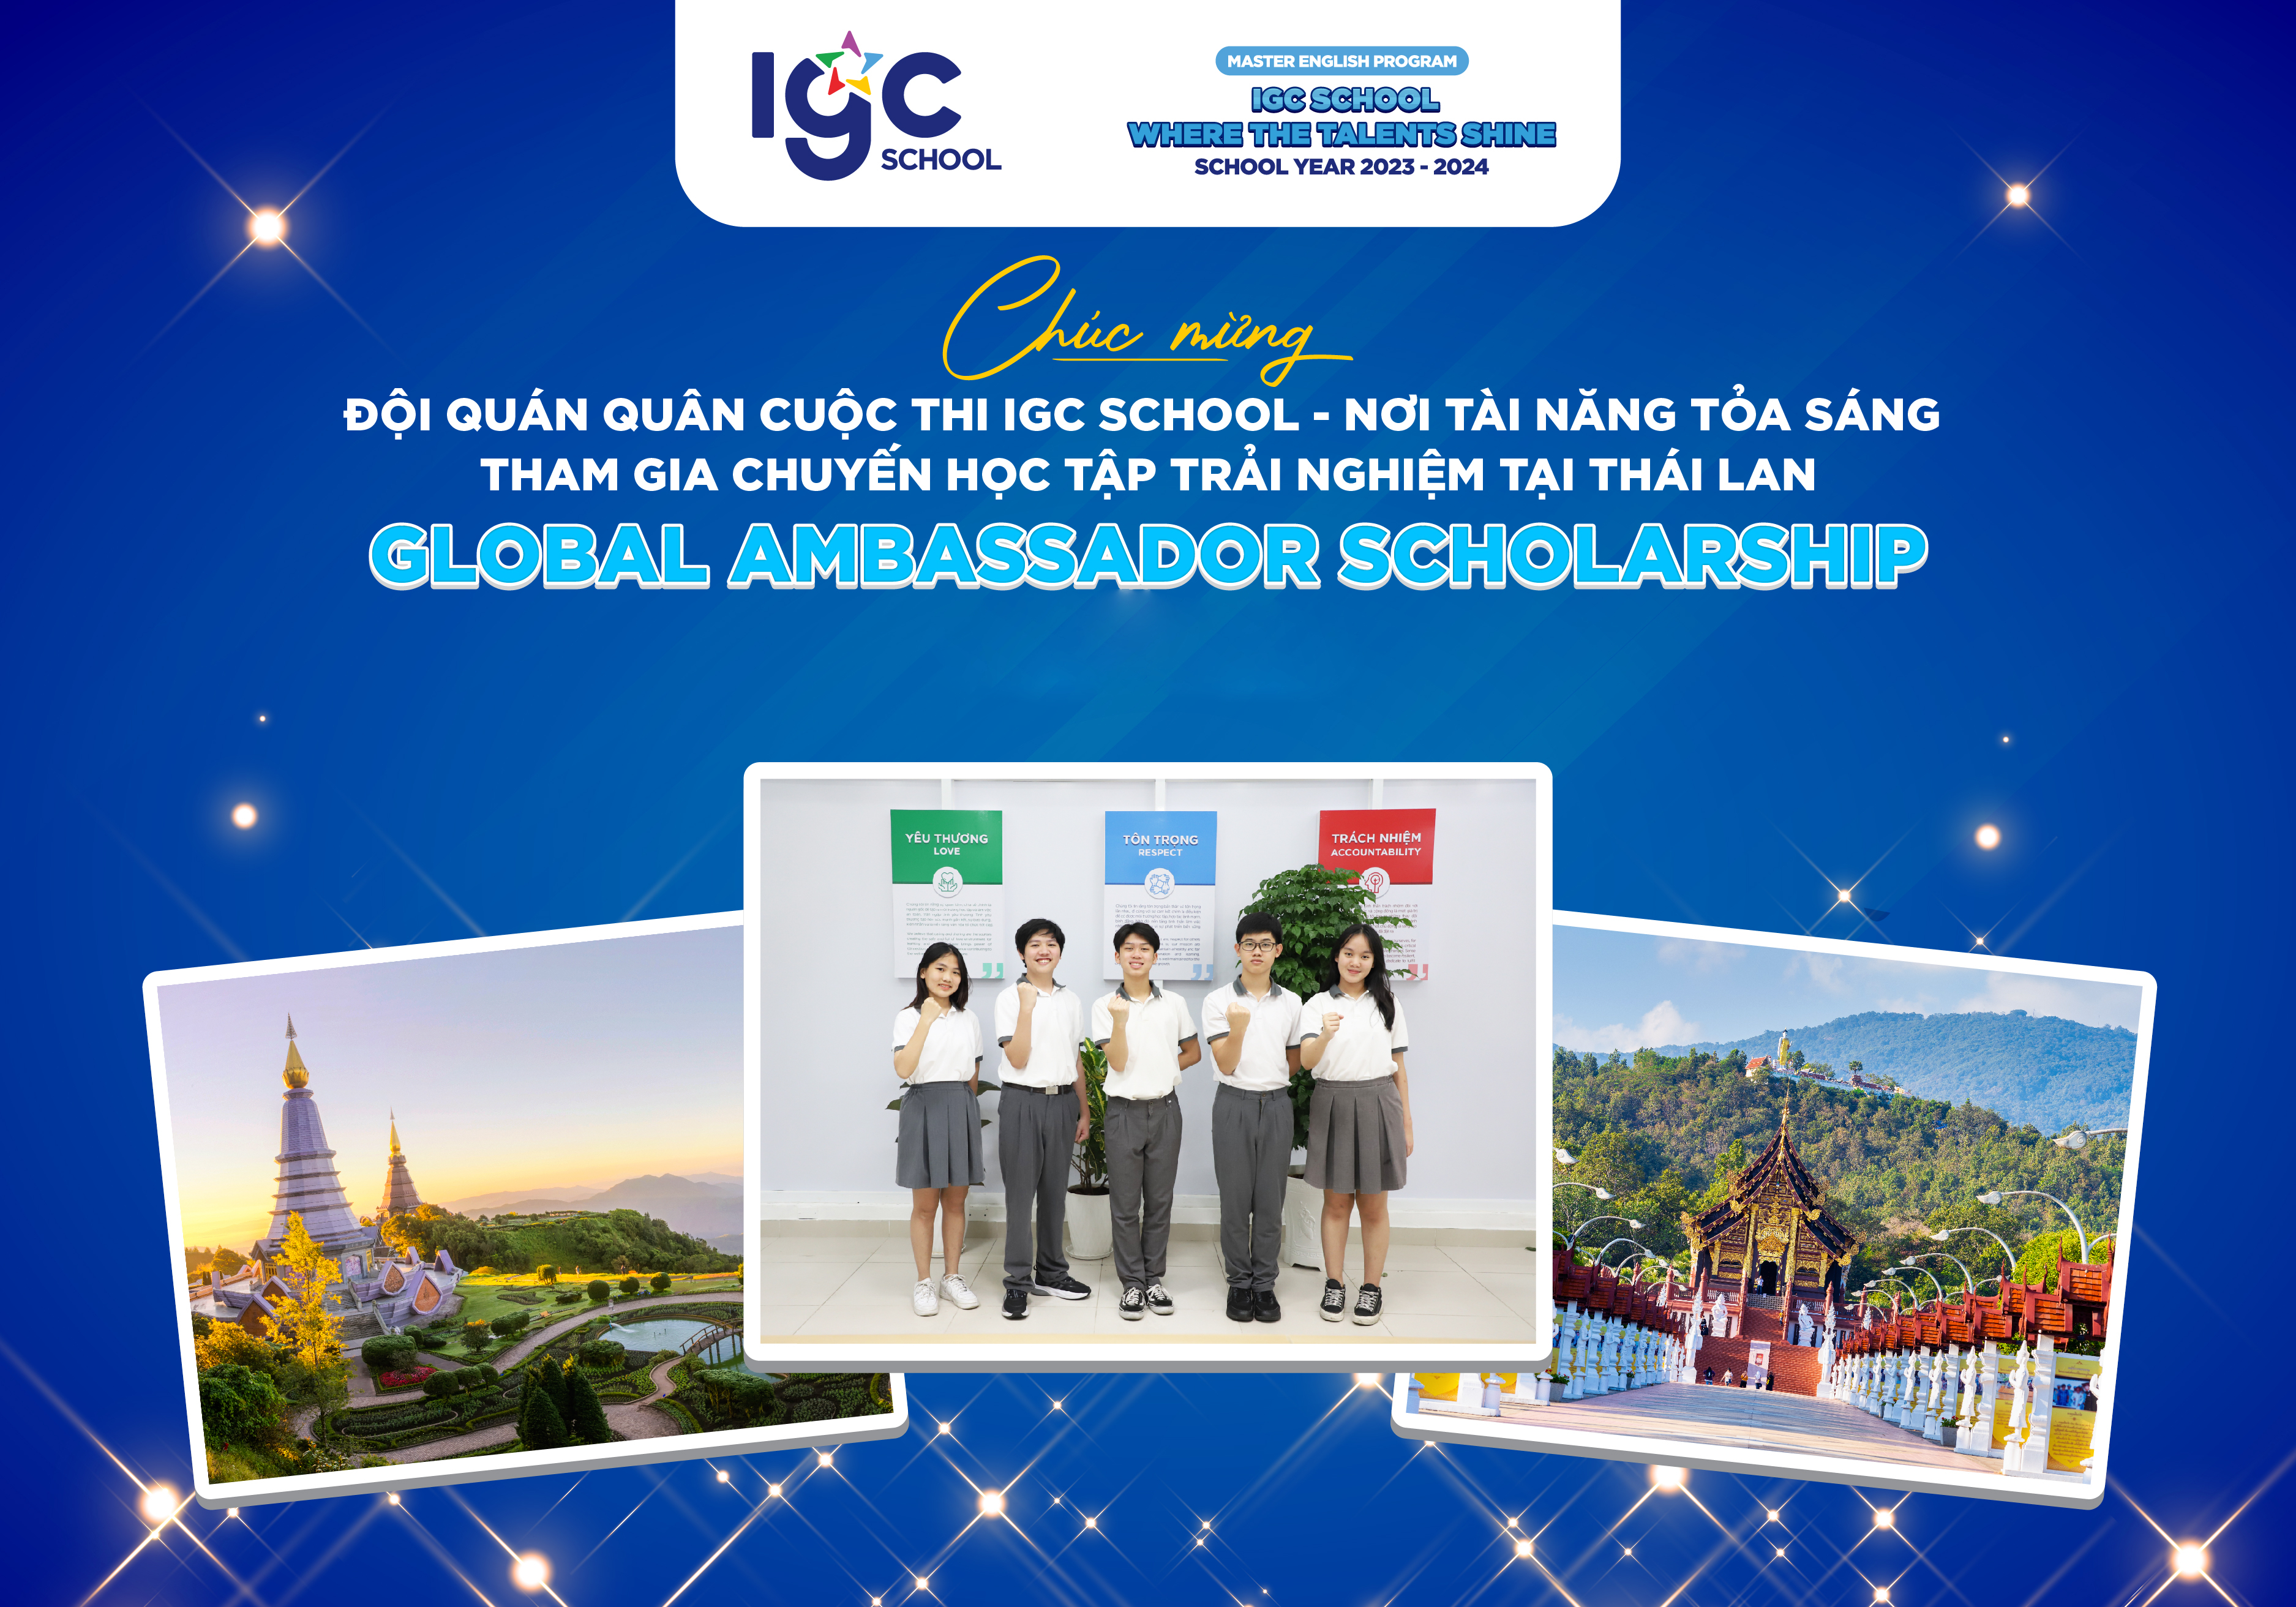 [IGC School Master English] Chúc mừng đội Quán quân cuộc thi IGC School - Nơi Tài năng tỏa sáng tham gia chuyến học tập trải nghiệm tại Thái Lan